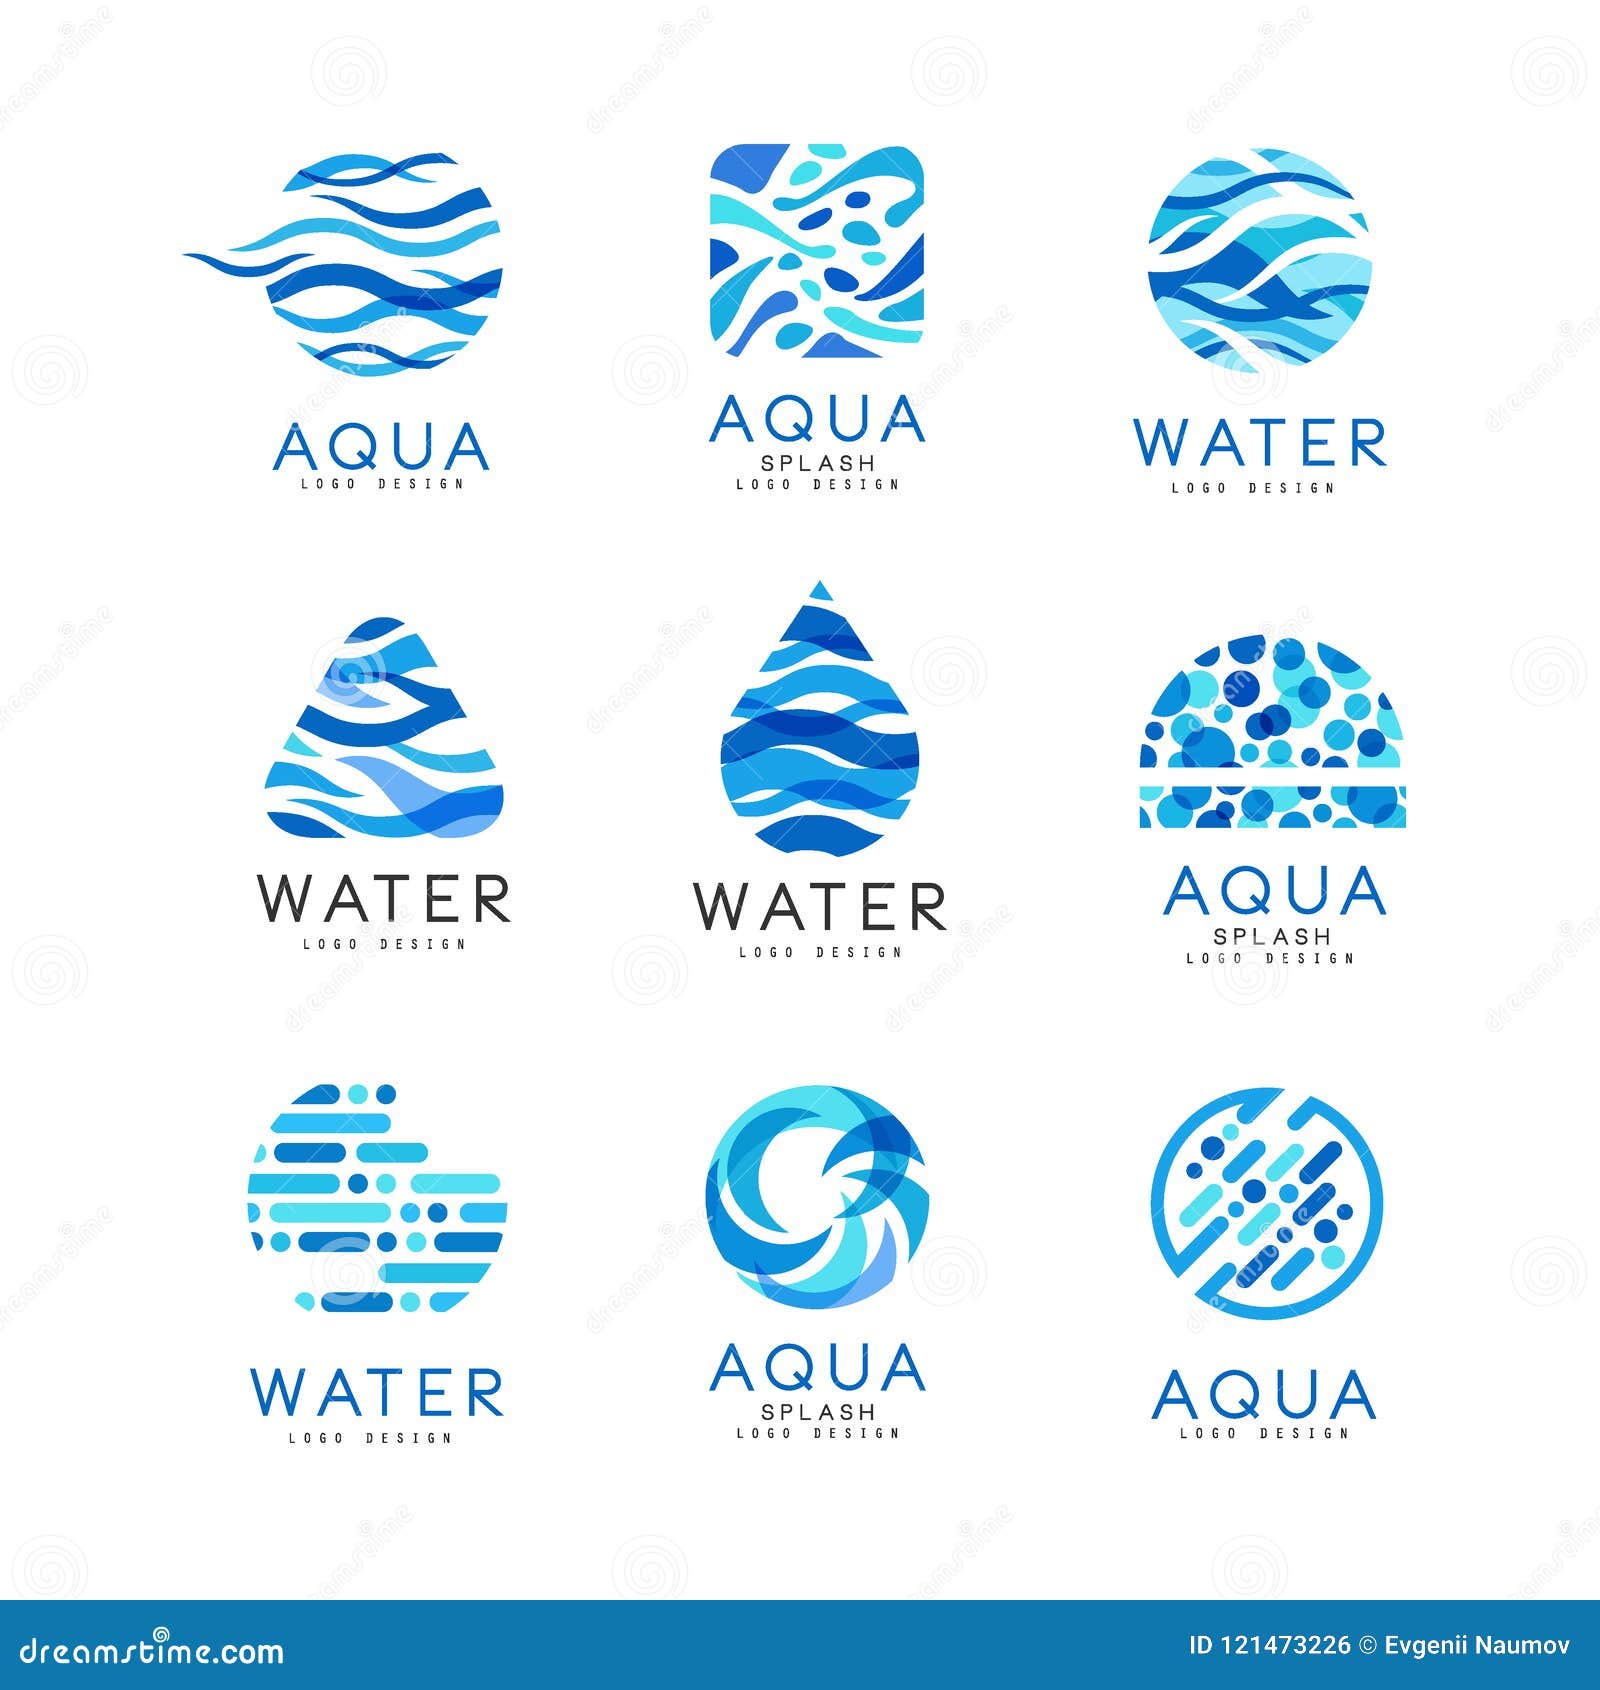 Flat Vector Set of Original Aqua Logos. Abstract Blue Emblems for Water ...